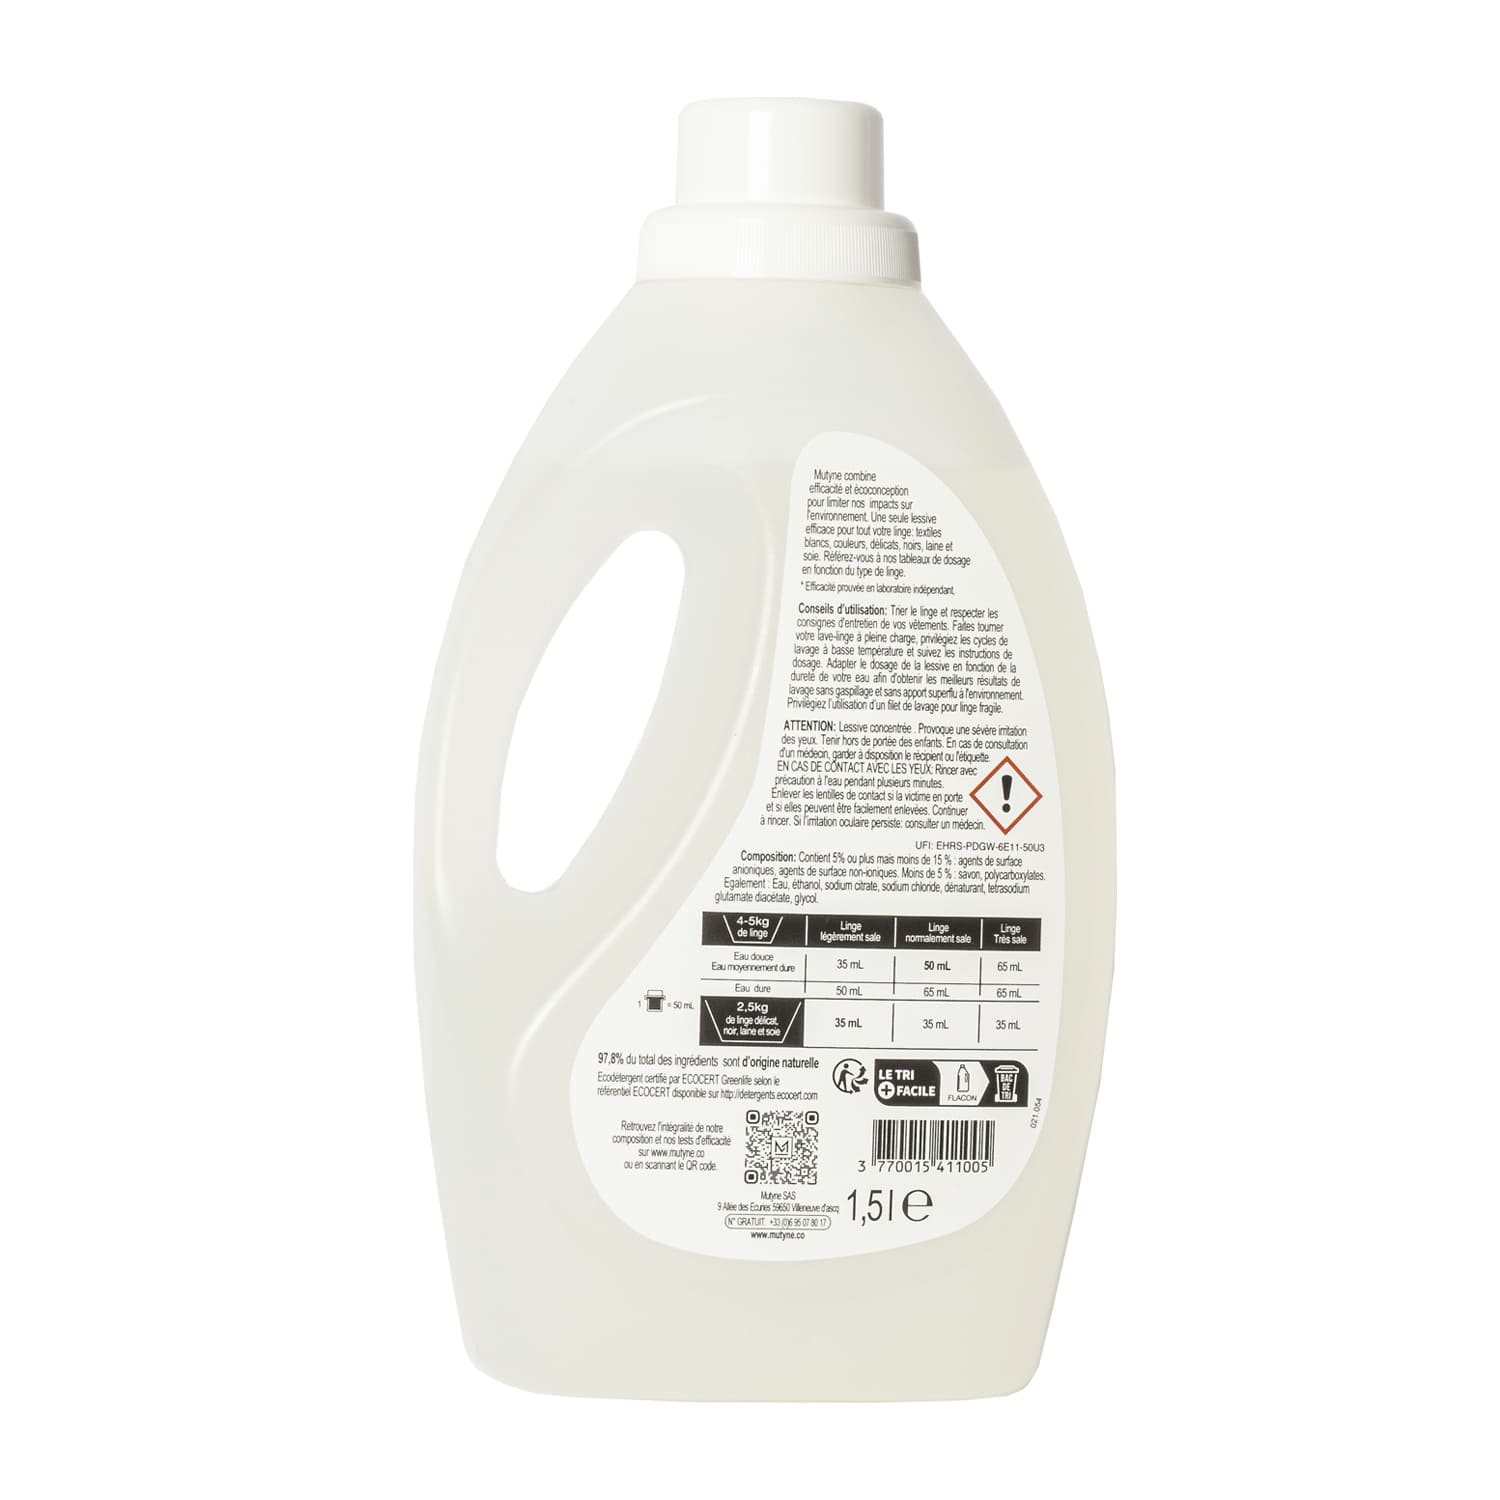 Le Chat Bébé Eco Efficace – Lessive Liquide Hypoallergénique – 30